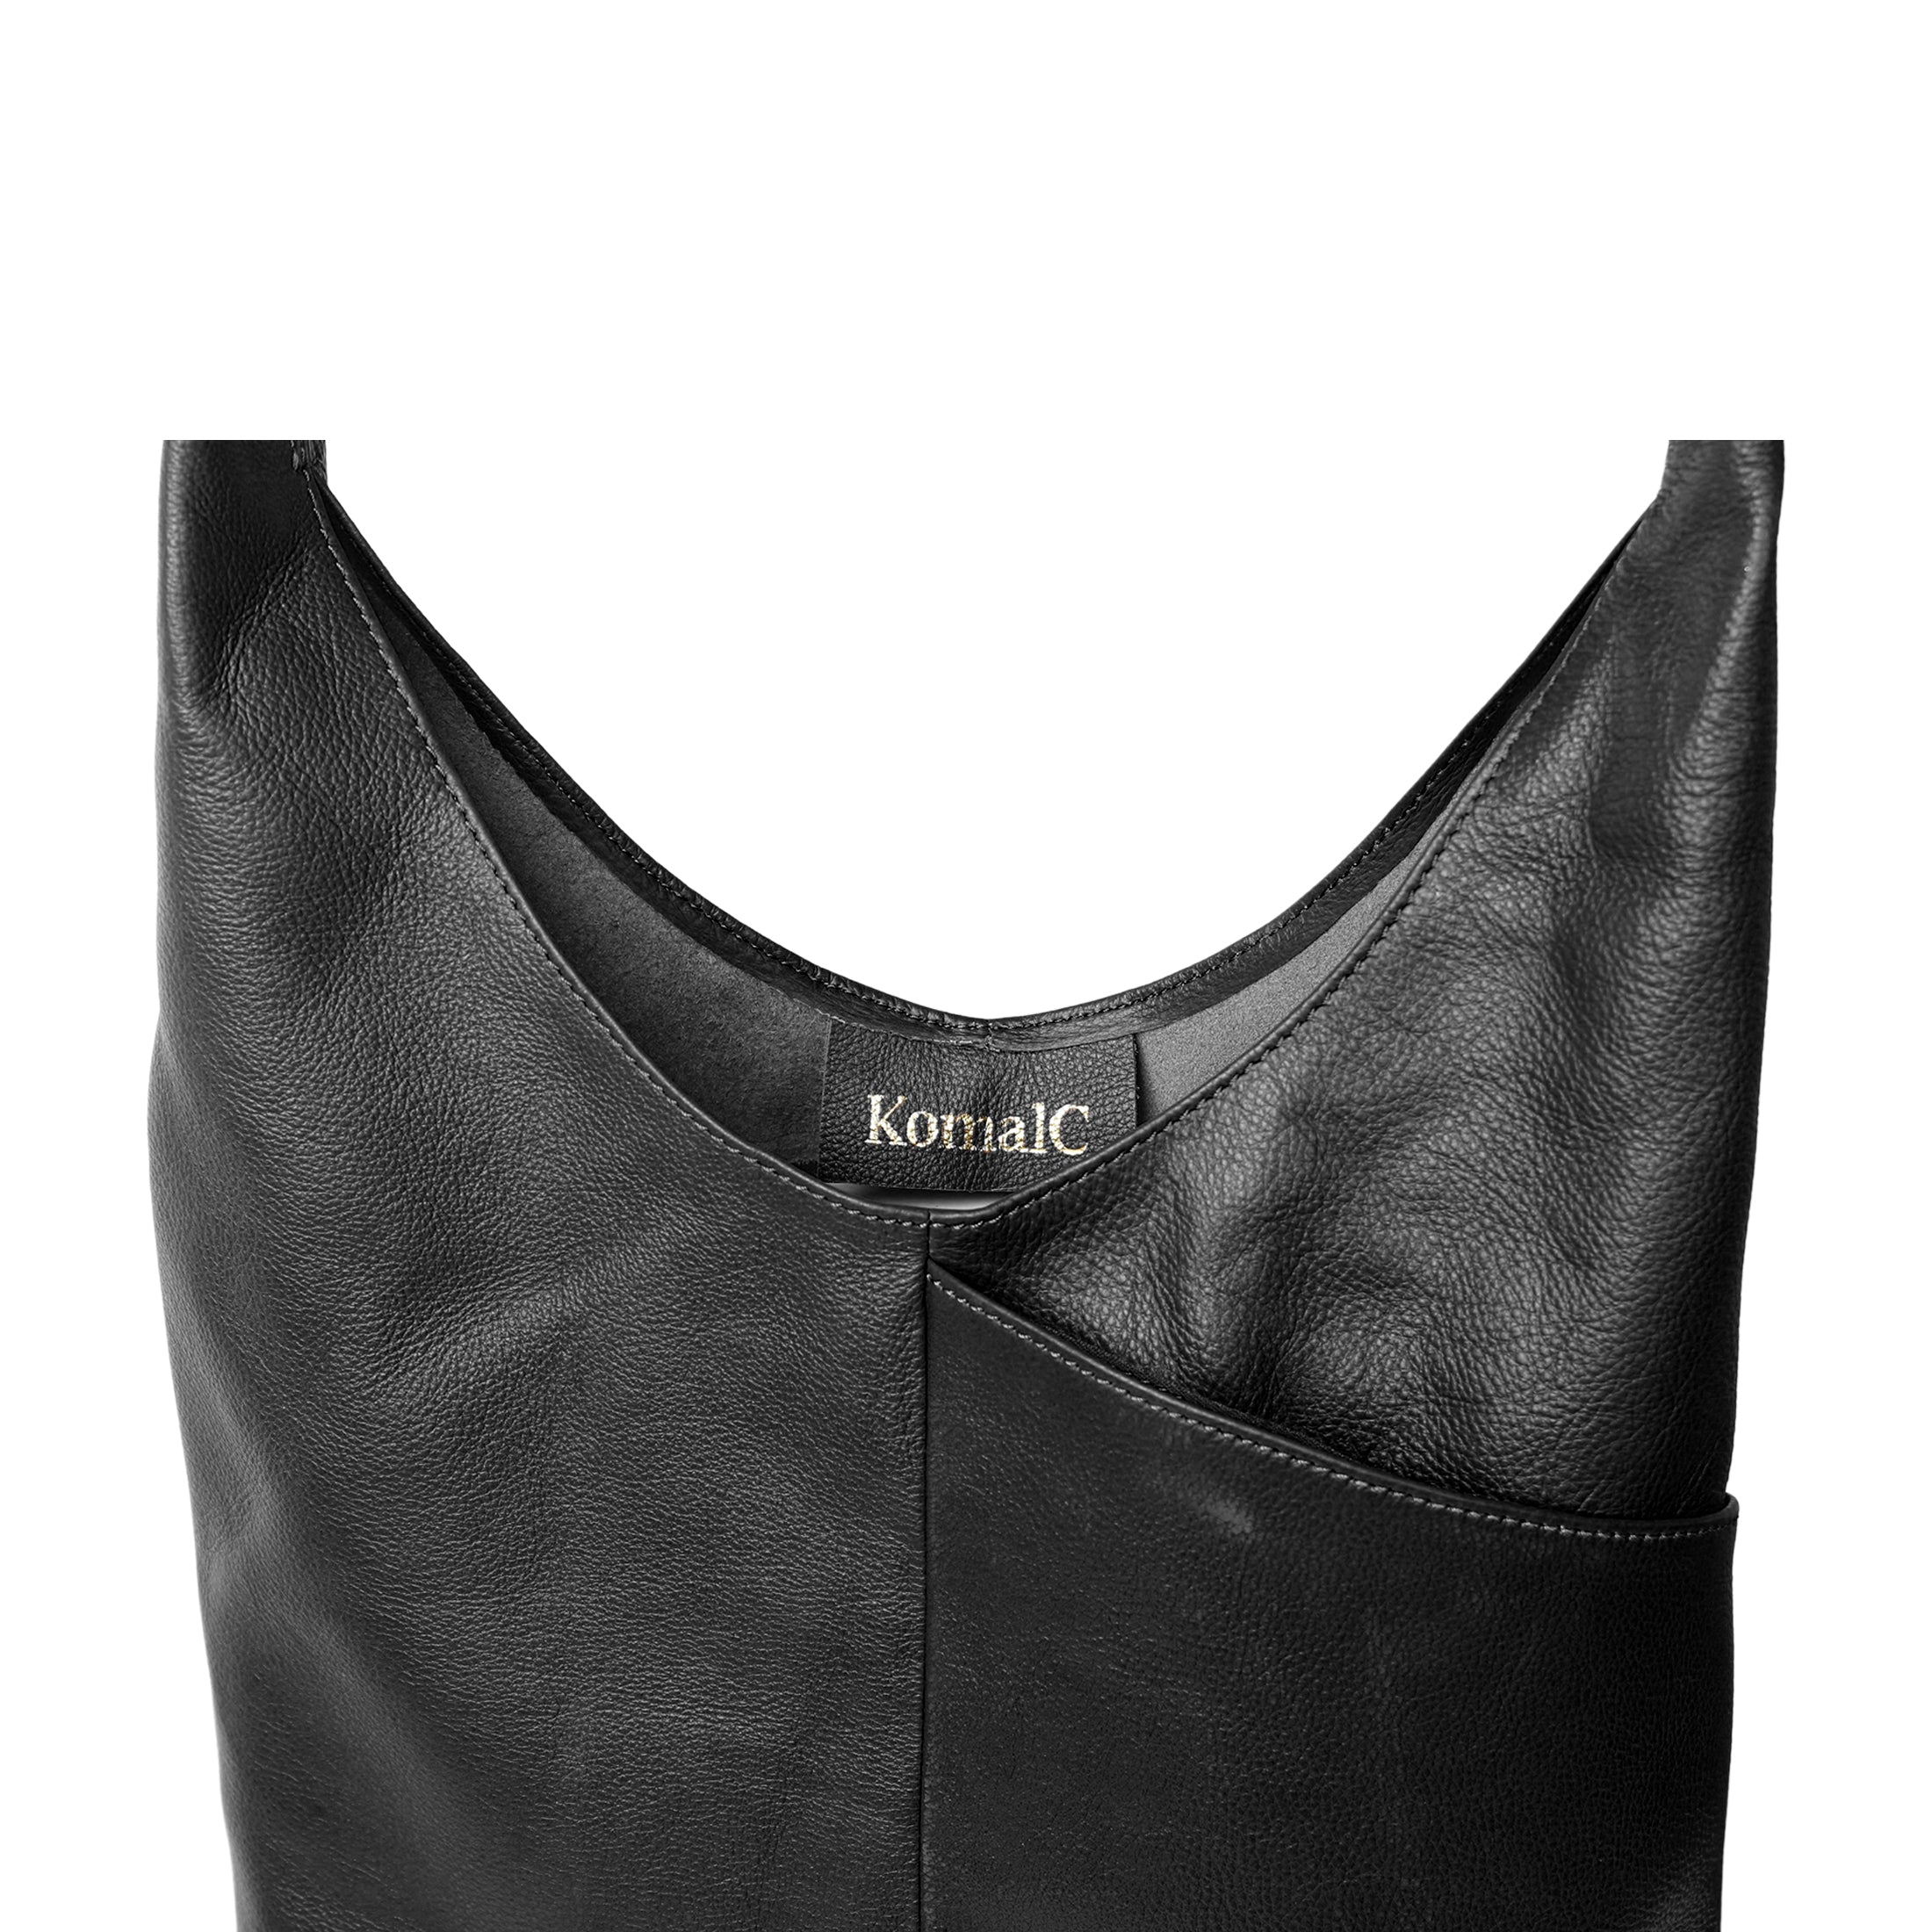 Women Handbags Faux Leather Shoulder Bag Purse Burgundy Tote Messenger Bag  | eBay